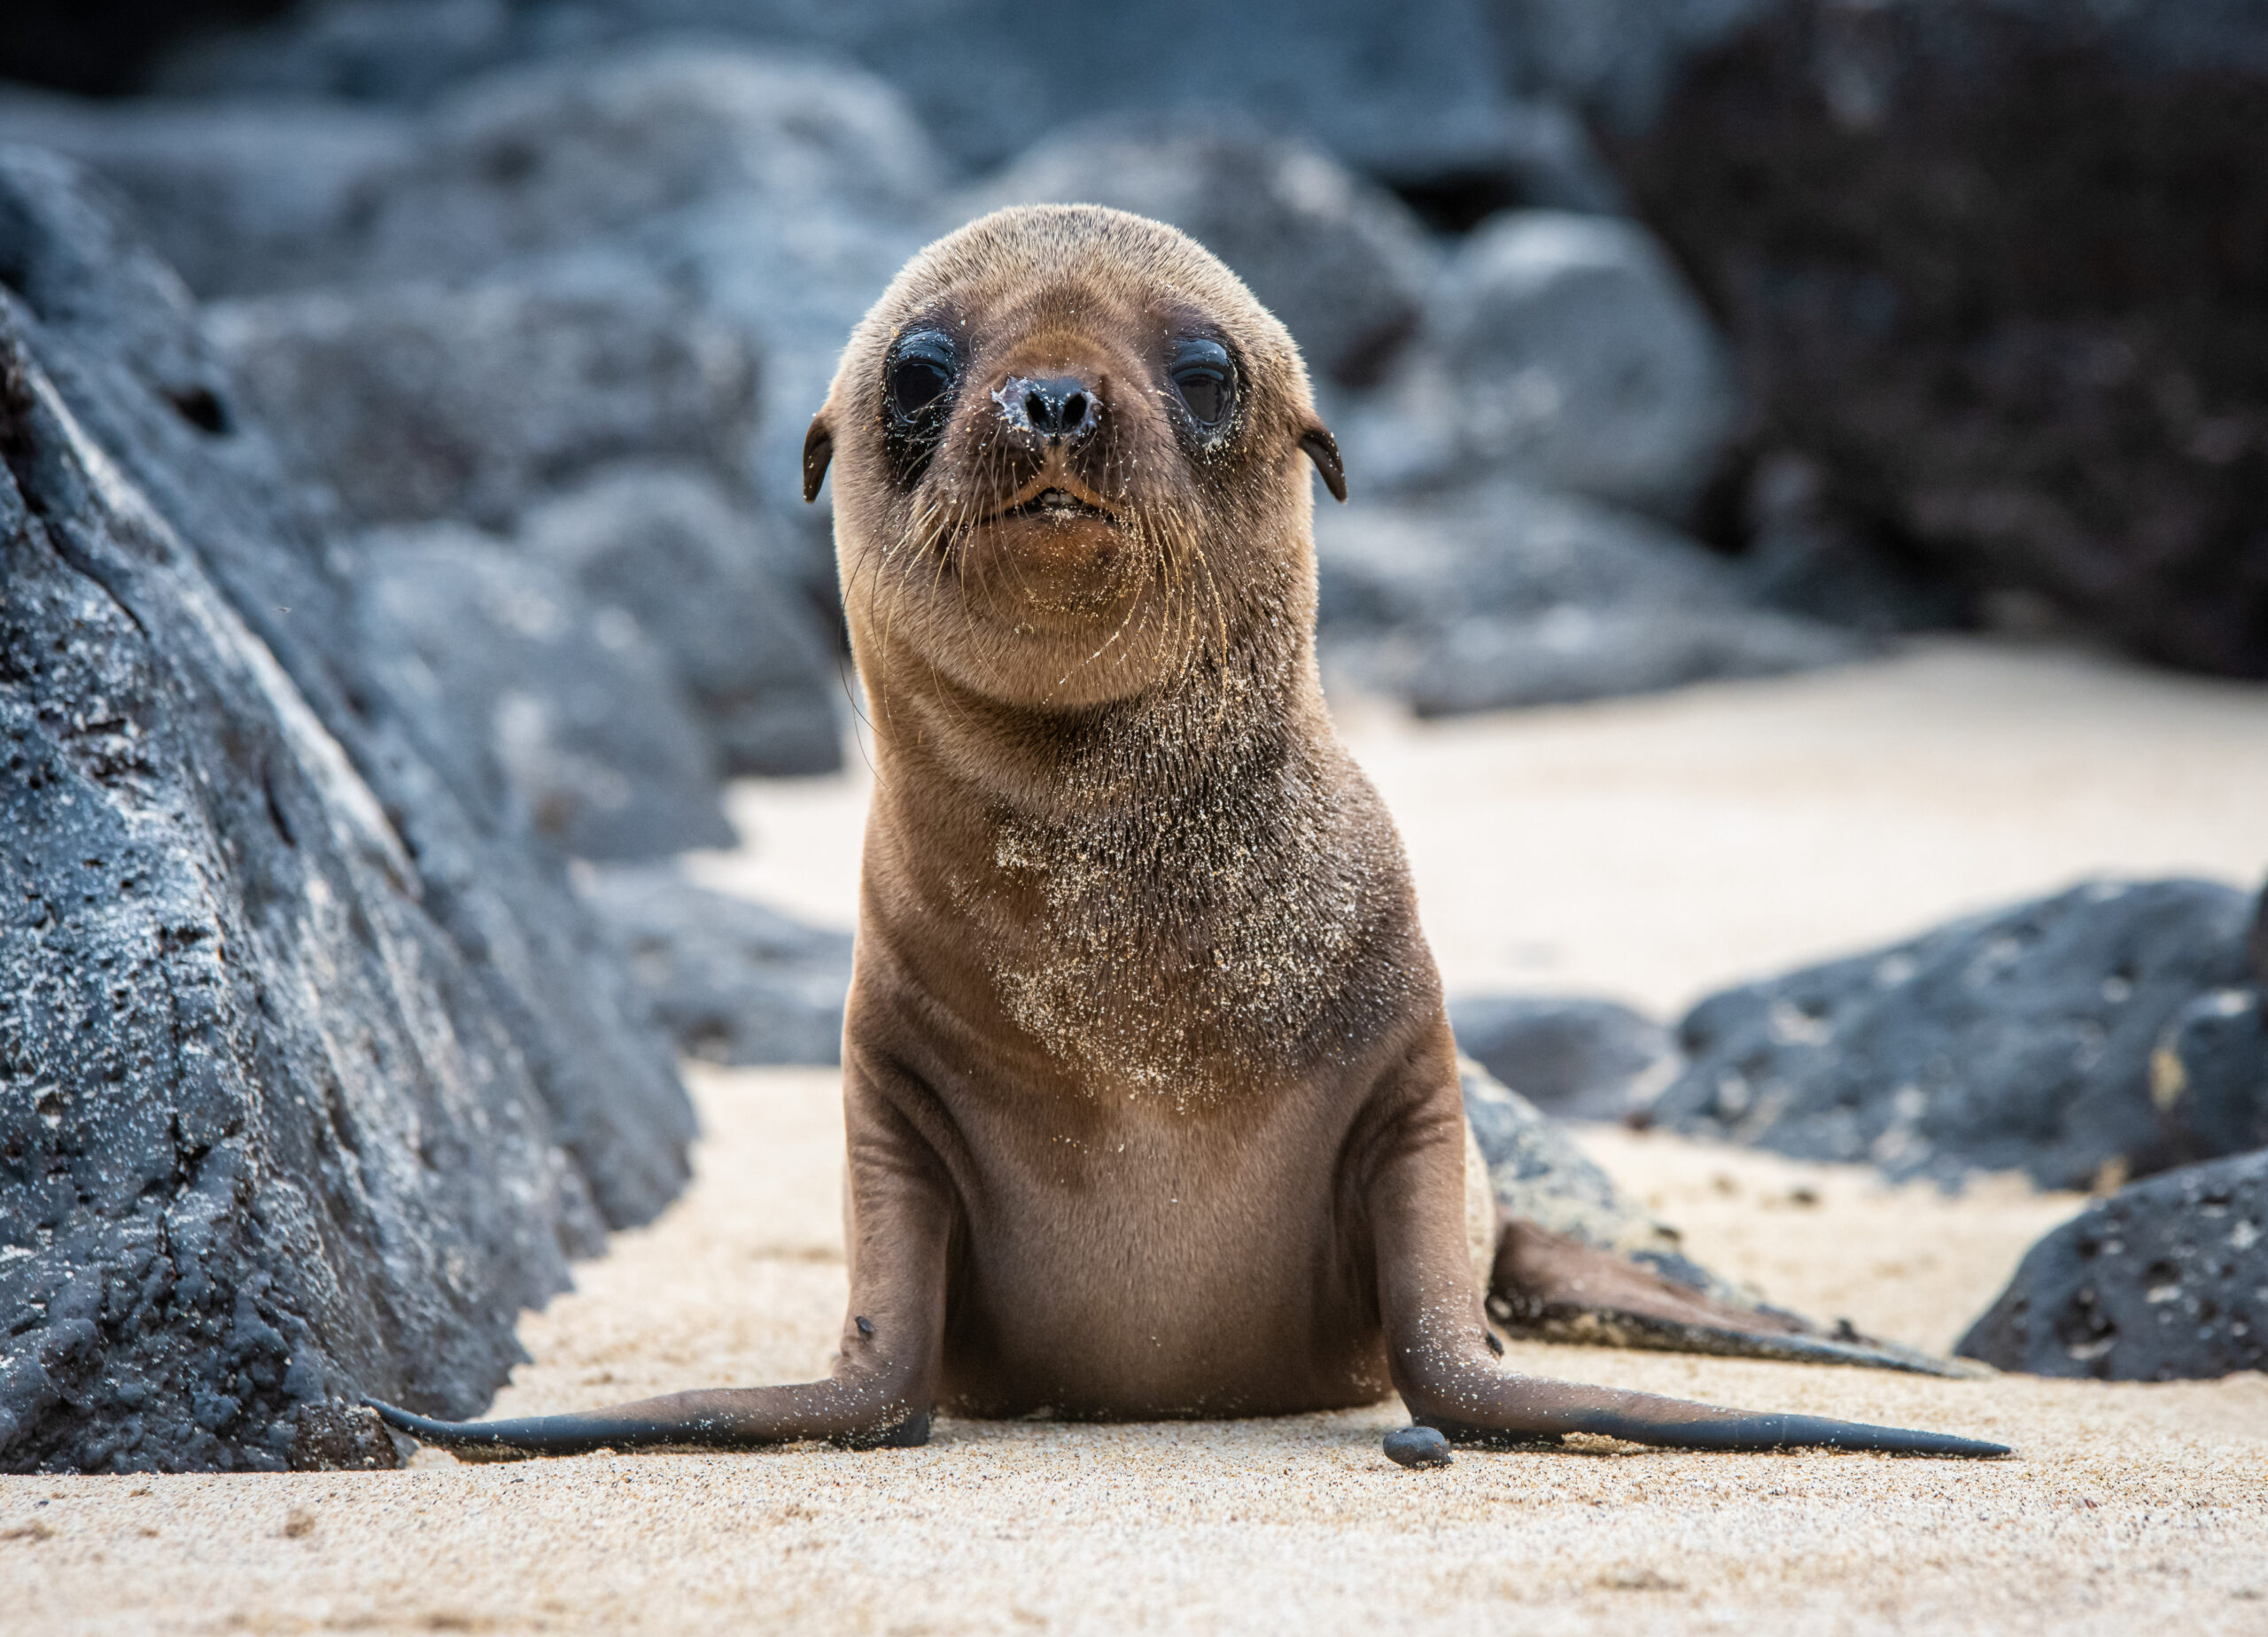 Adopt a Galapagos Sea Lion - Galapagos Conservation Trust